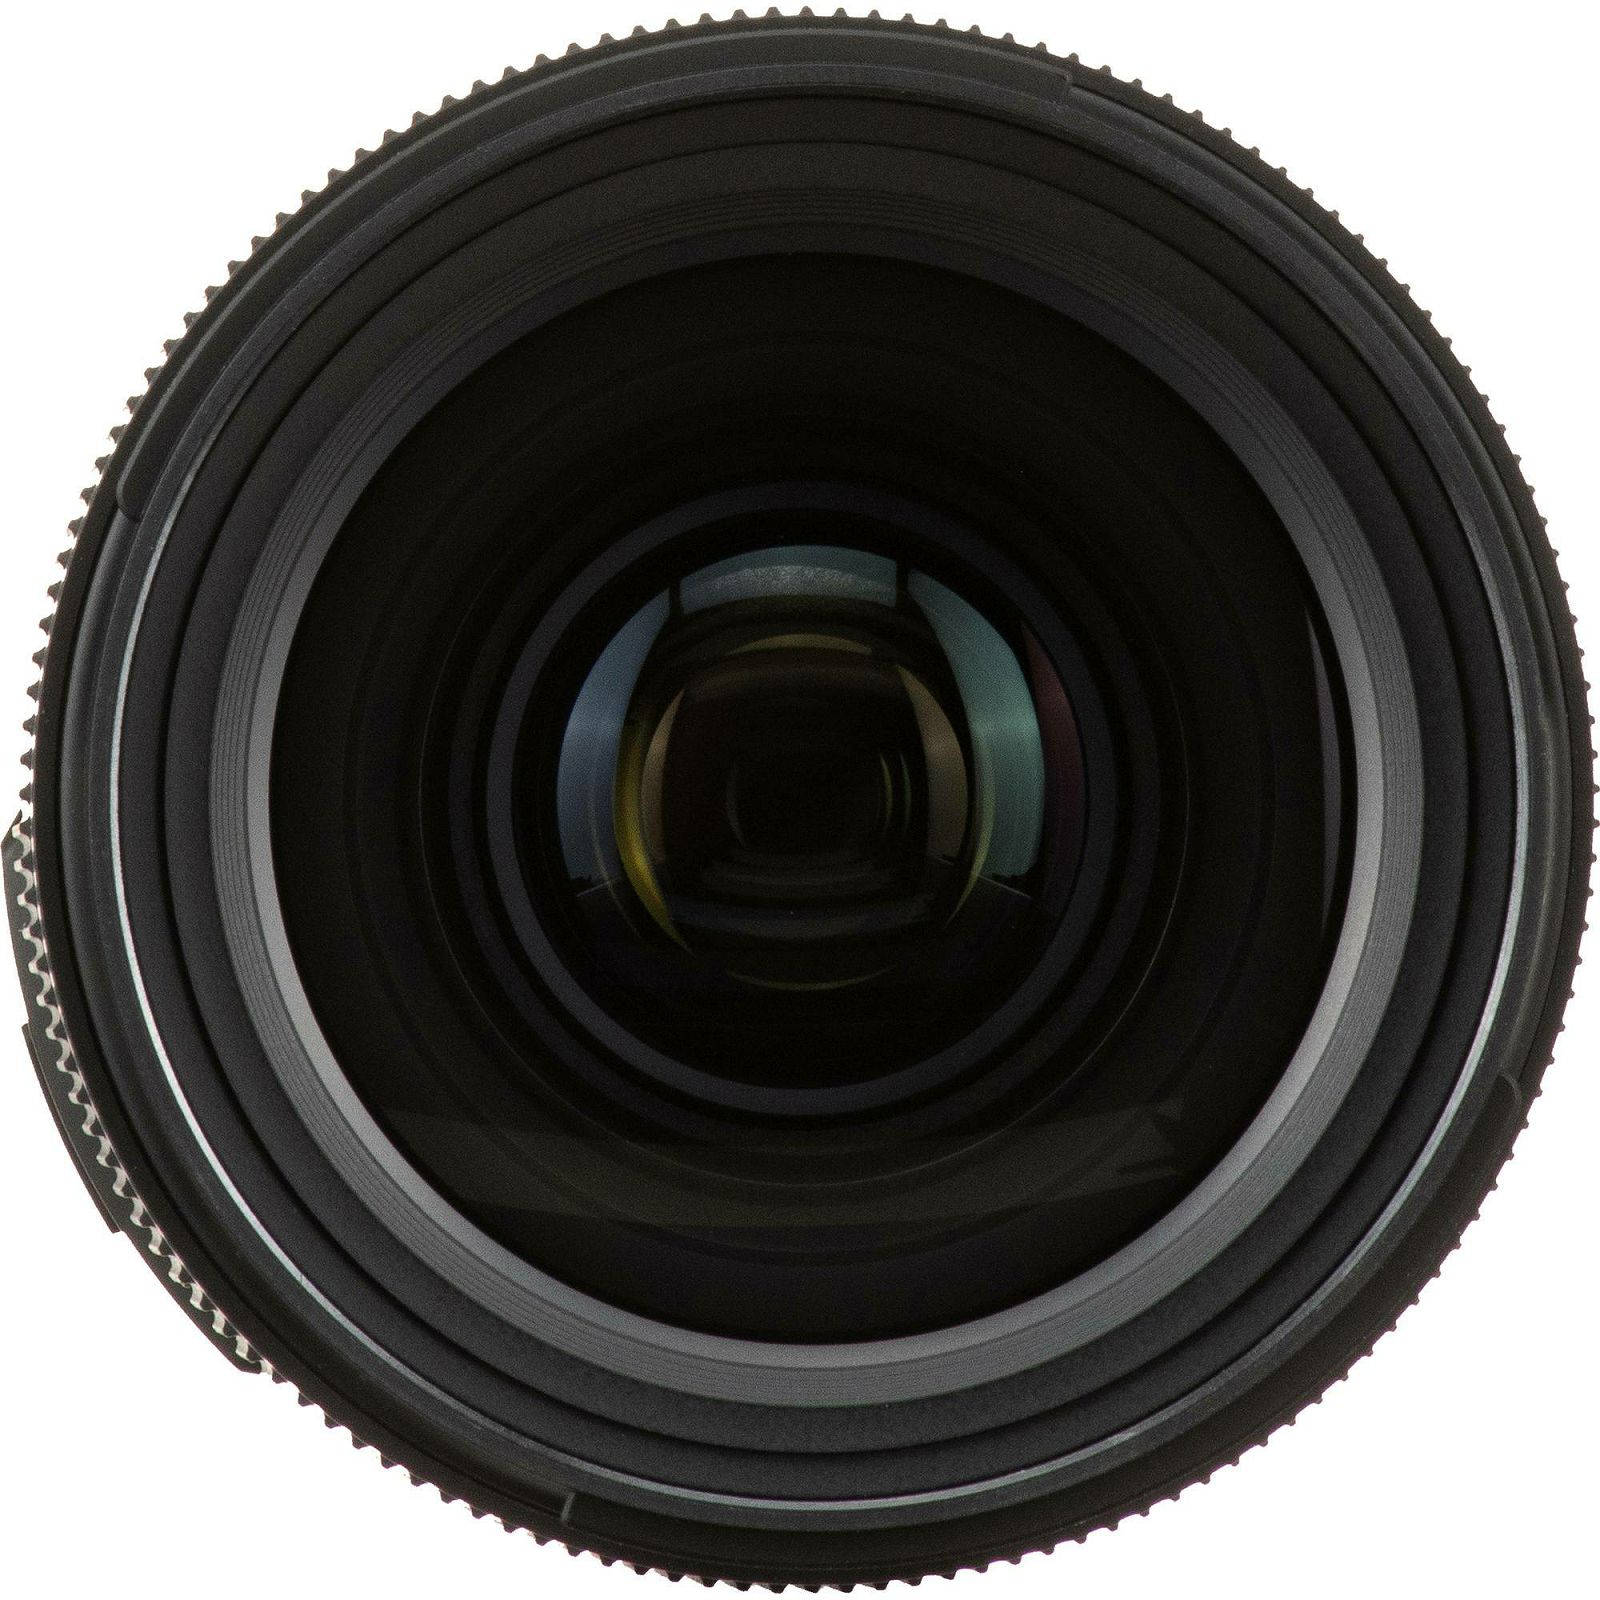 Tamron SP 35mm f/1.4 Di USD širokokutni objektiv za Canon EF (F045E)